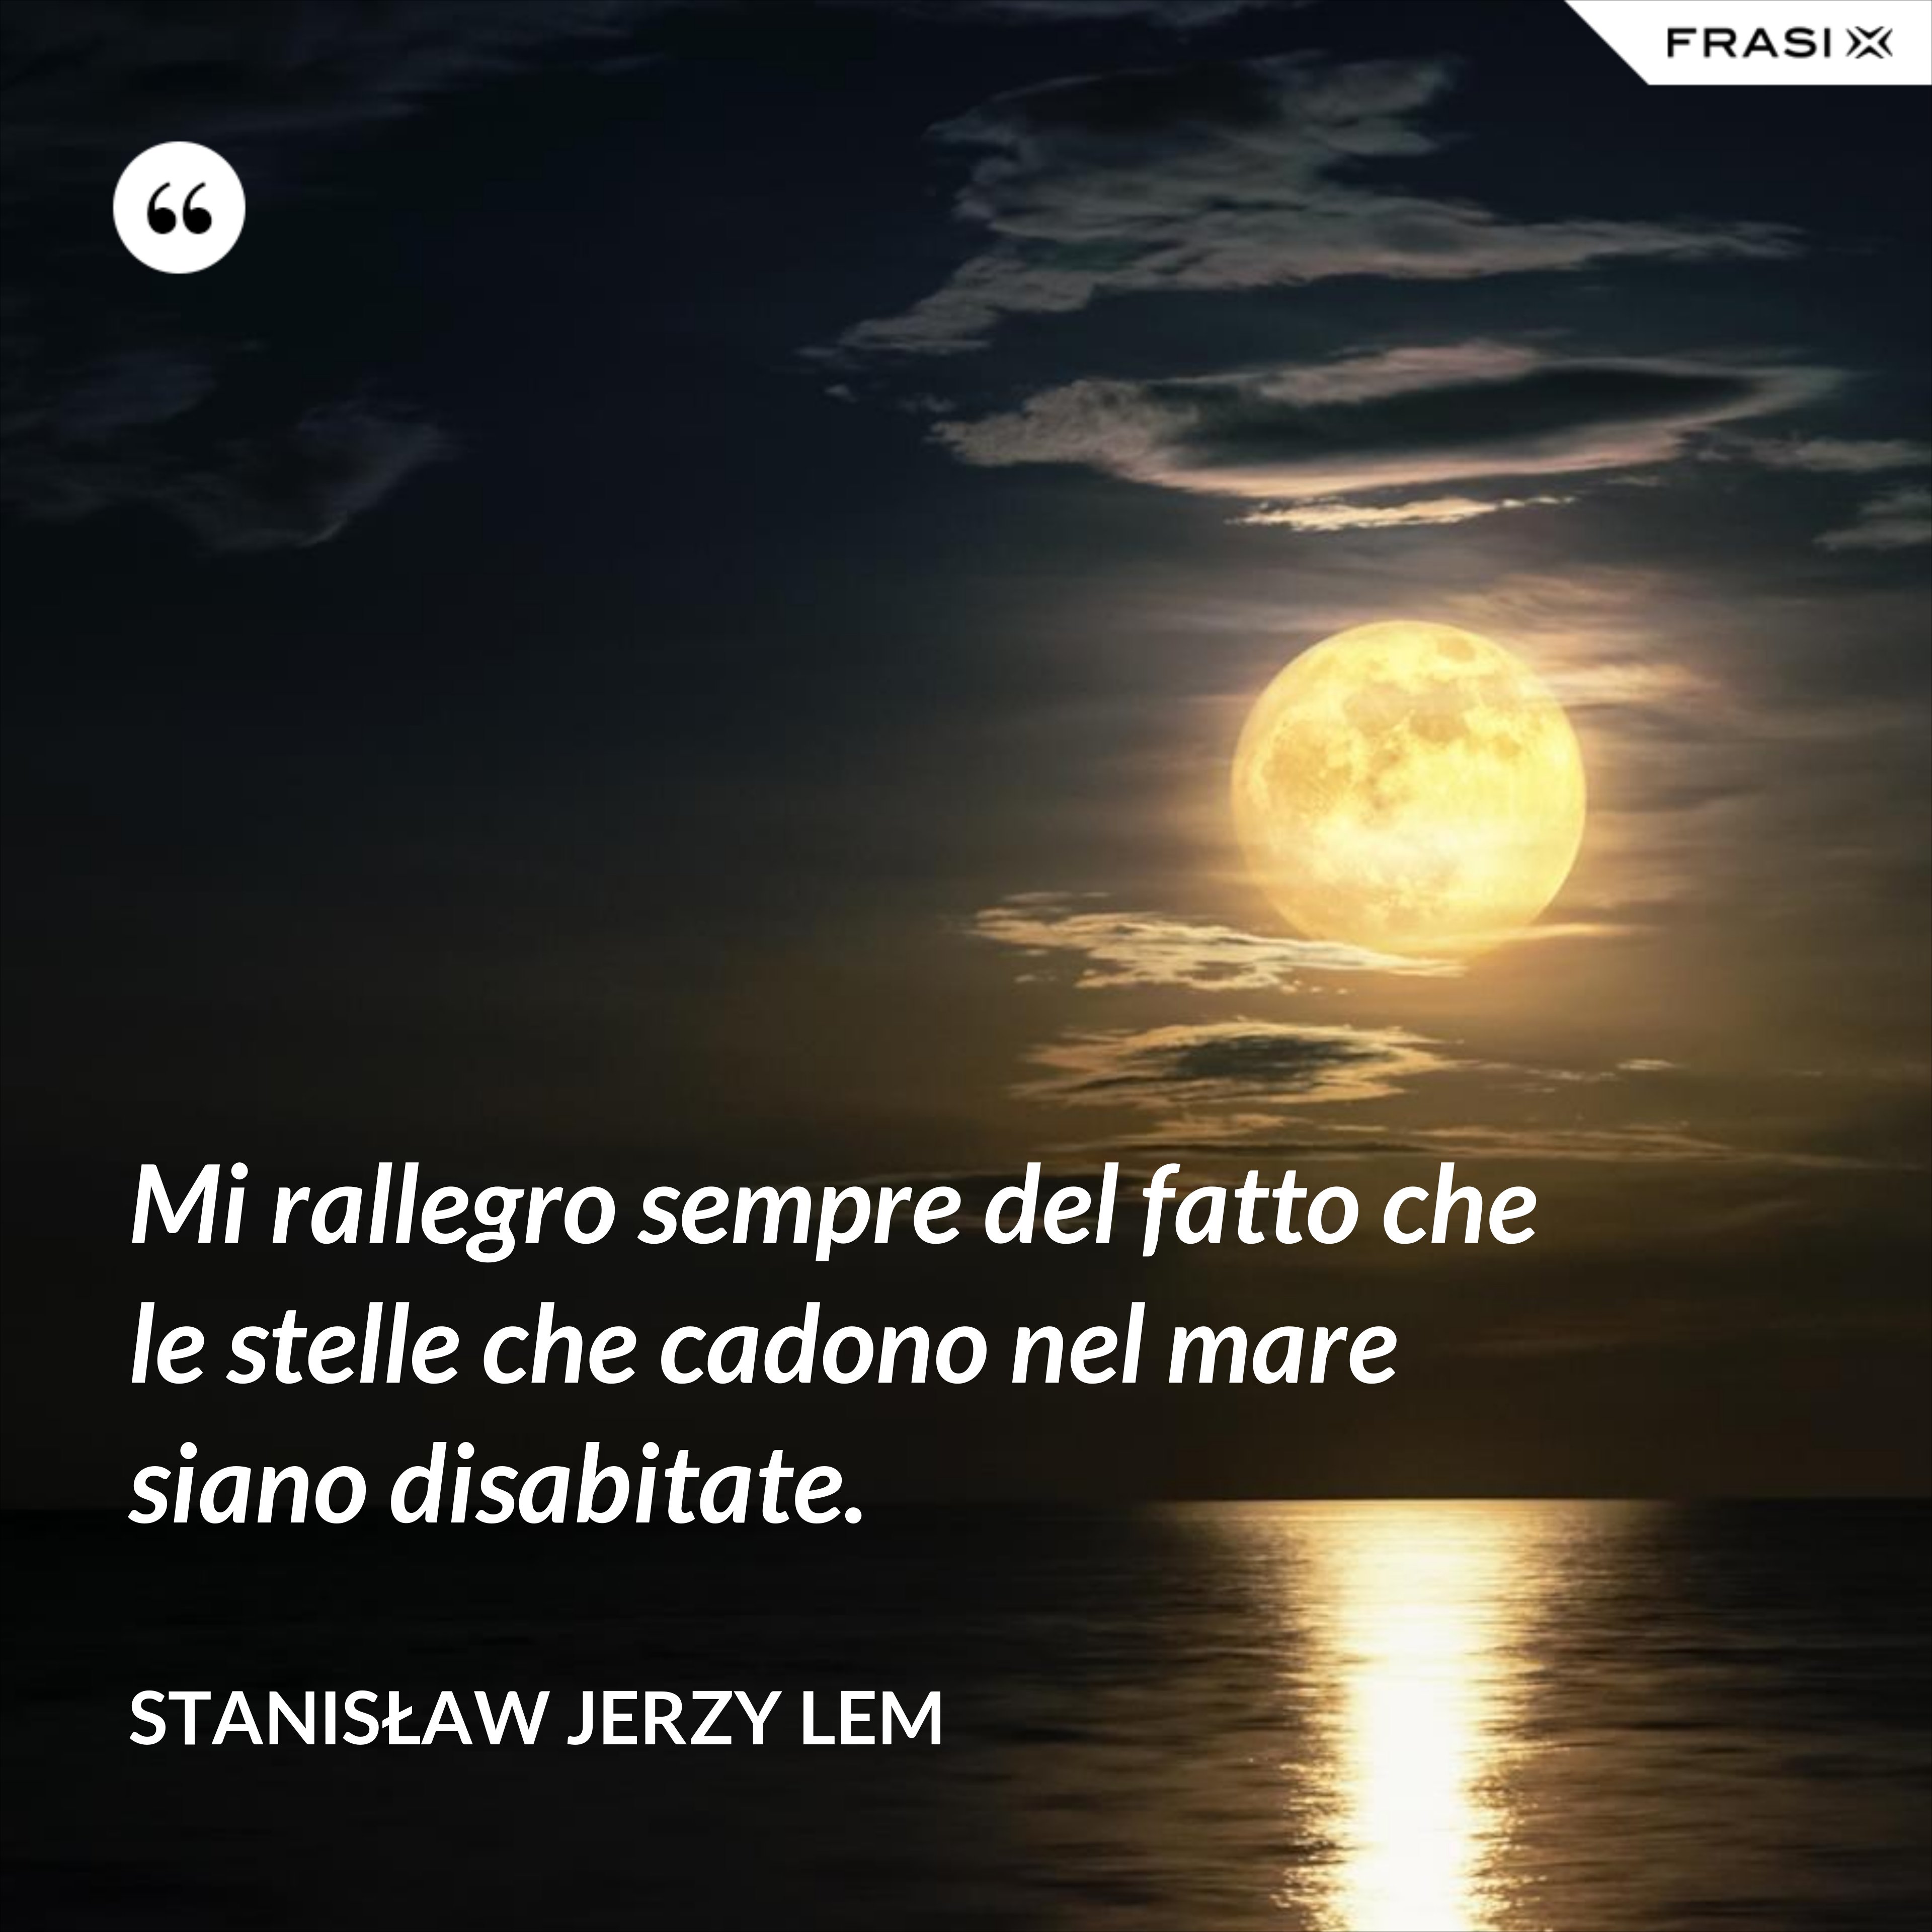 Mi rallegro sempre del fatto che le stelle che cadono nel mare siano disabitate. - Stanisław Jerzy Lem